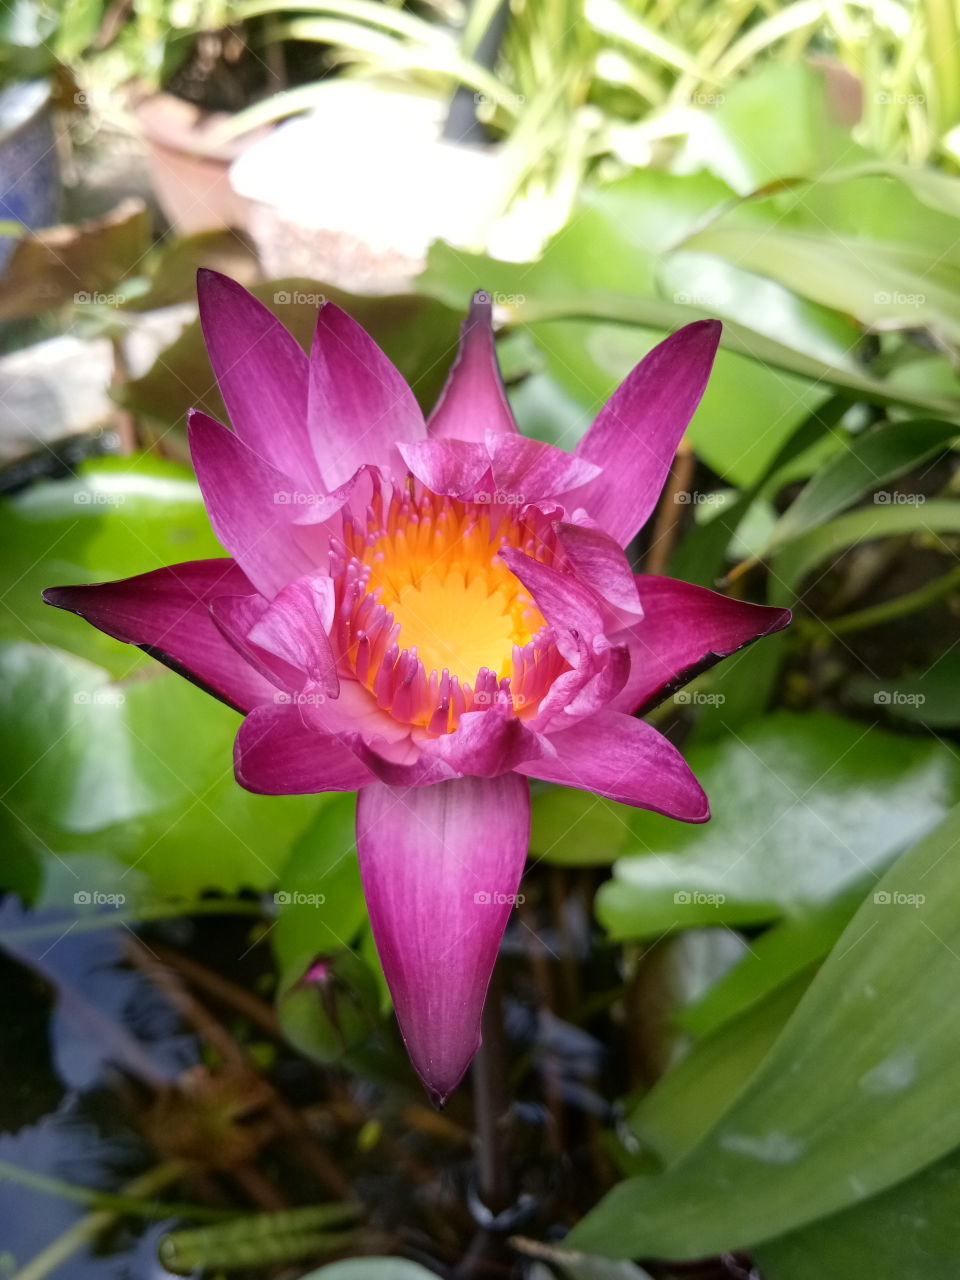 lotus
thailand
lesf
pink